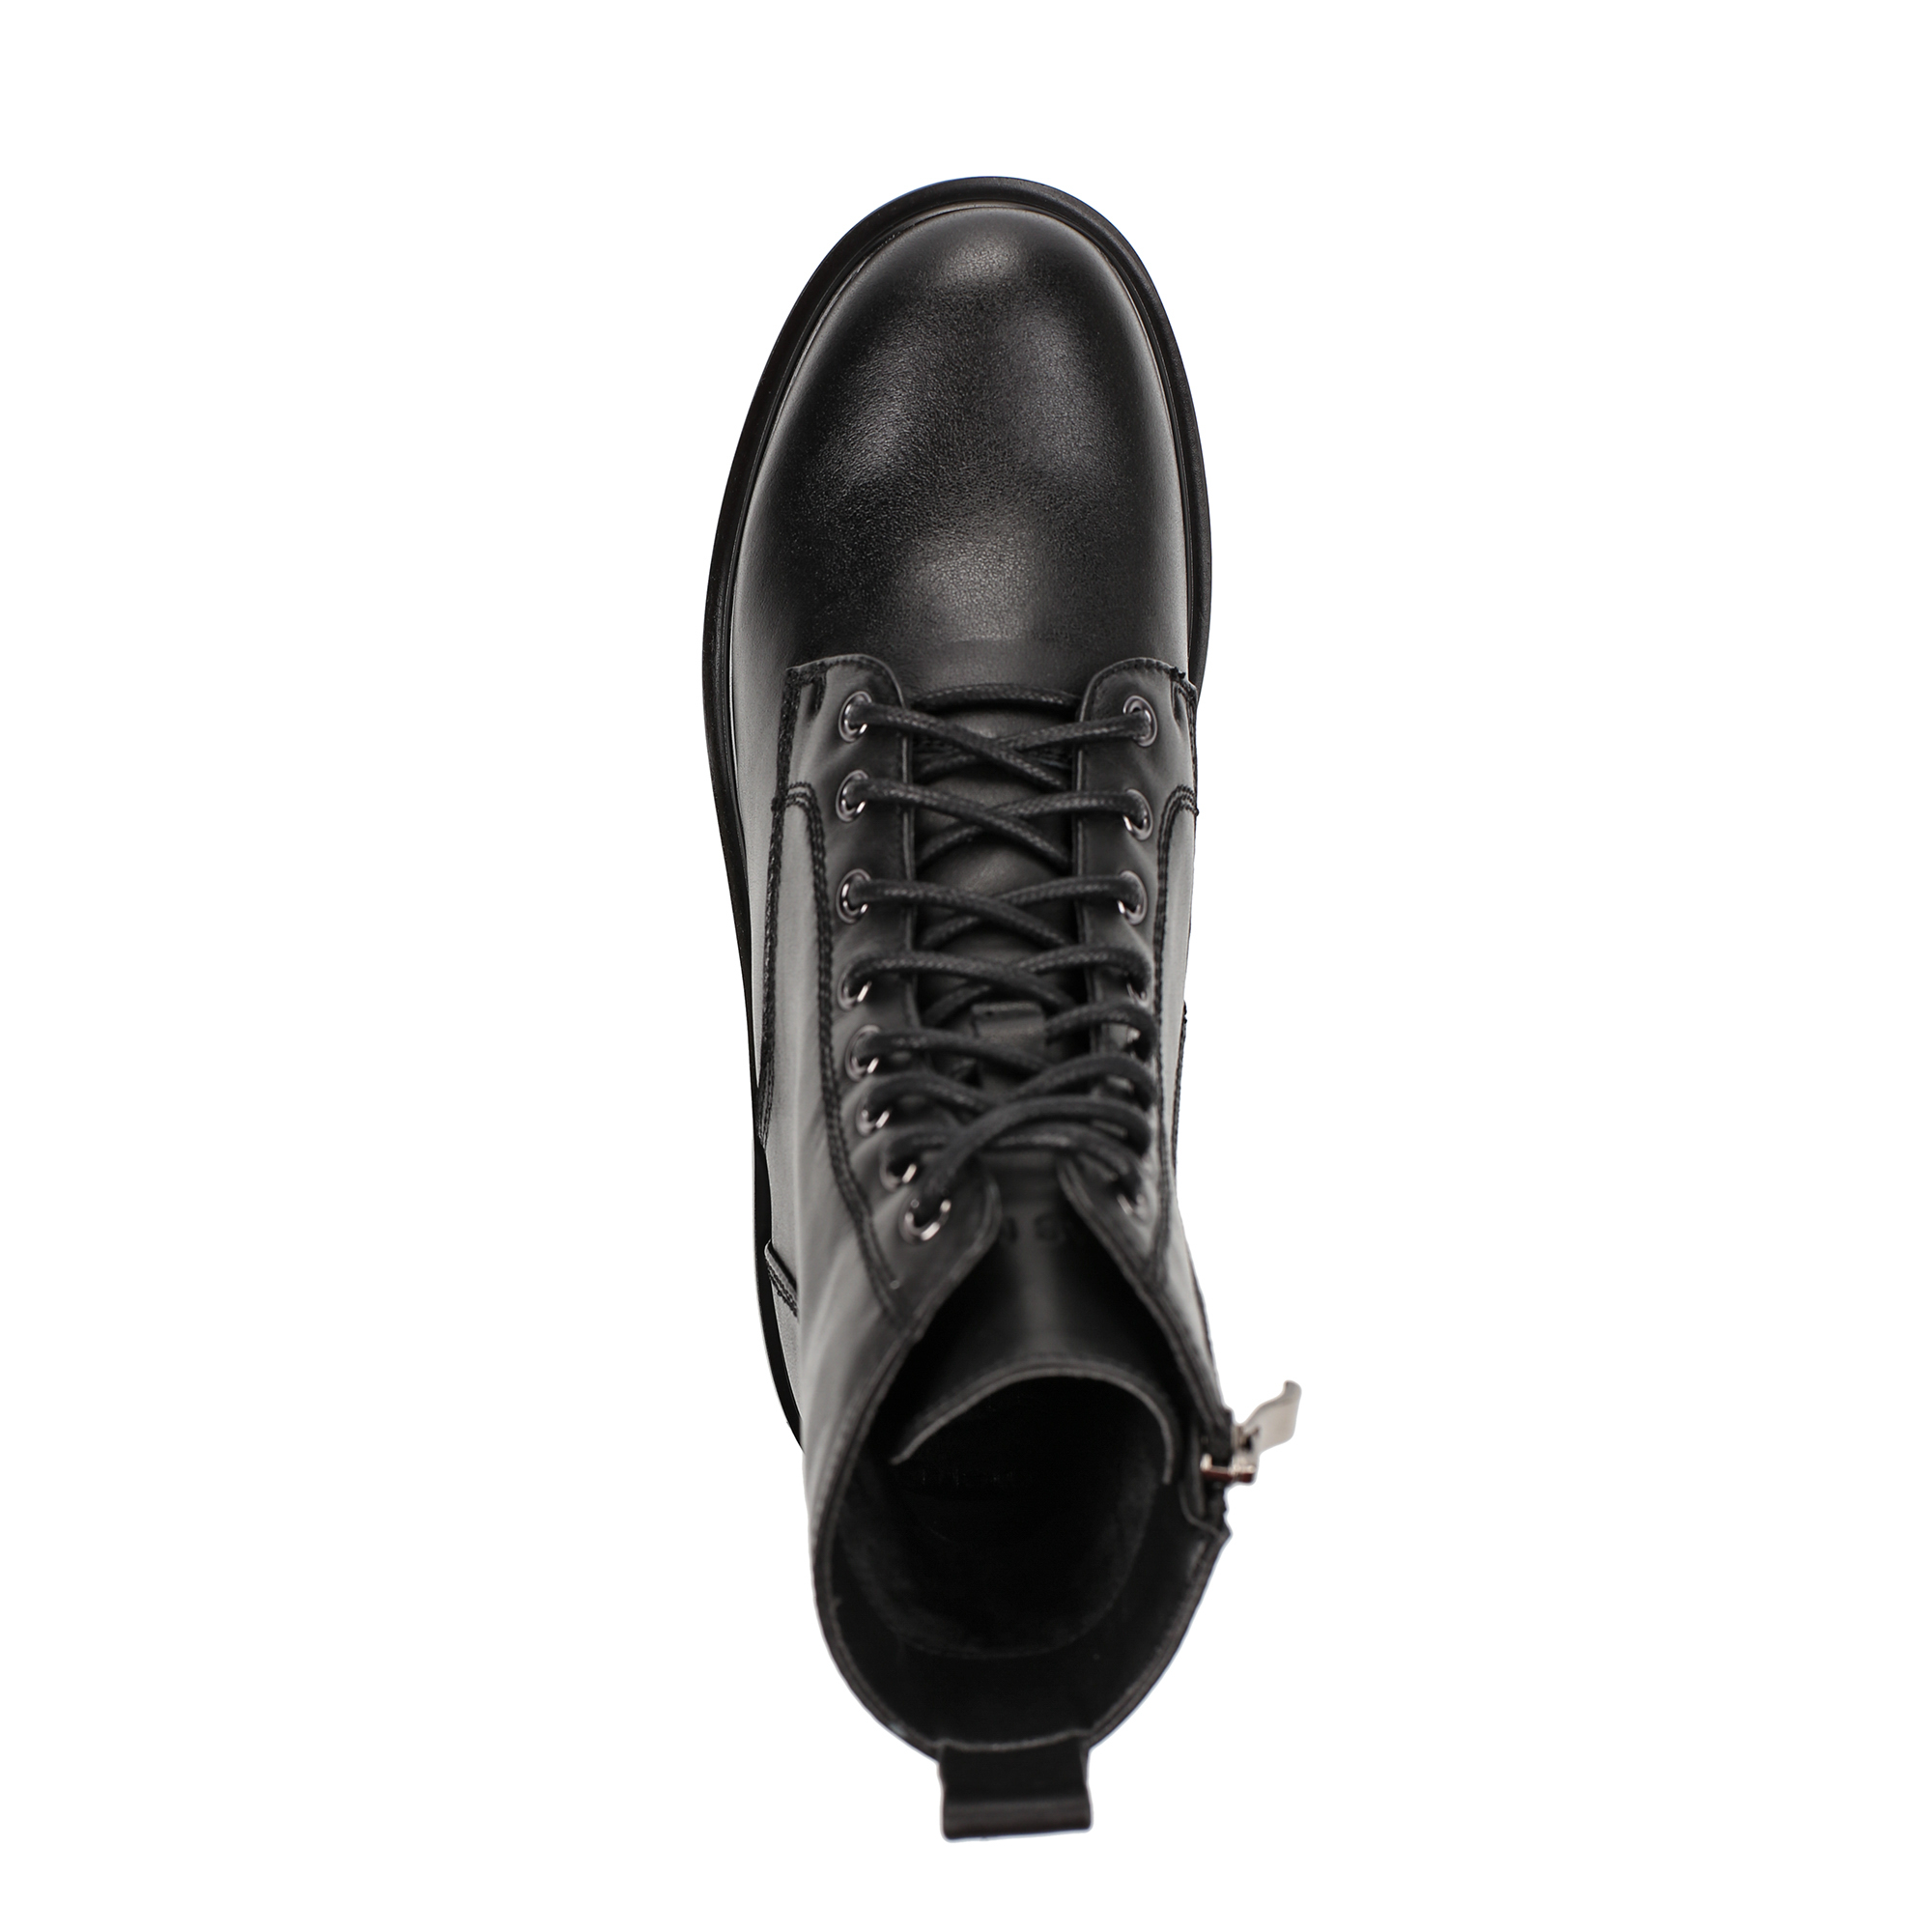 Ботинки Thomas Munz 233-707B-2102, цвет черный, размер 36 - фото 5